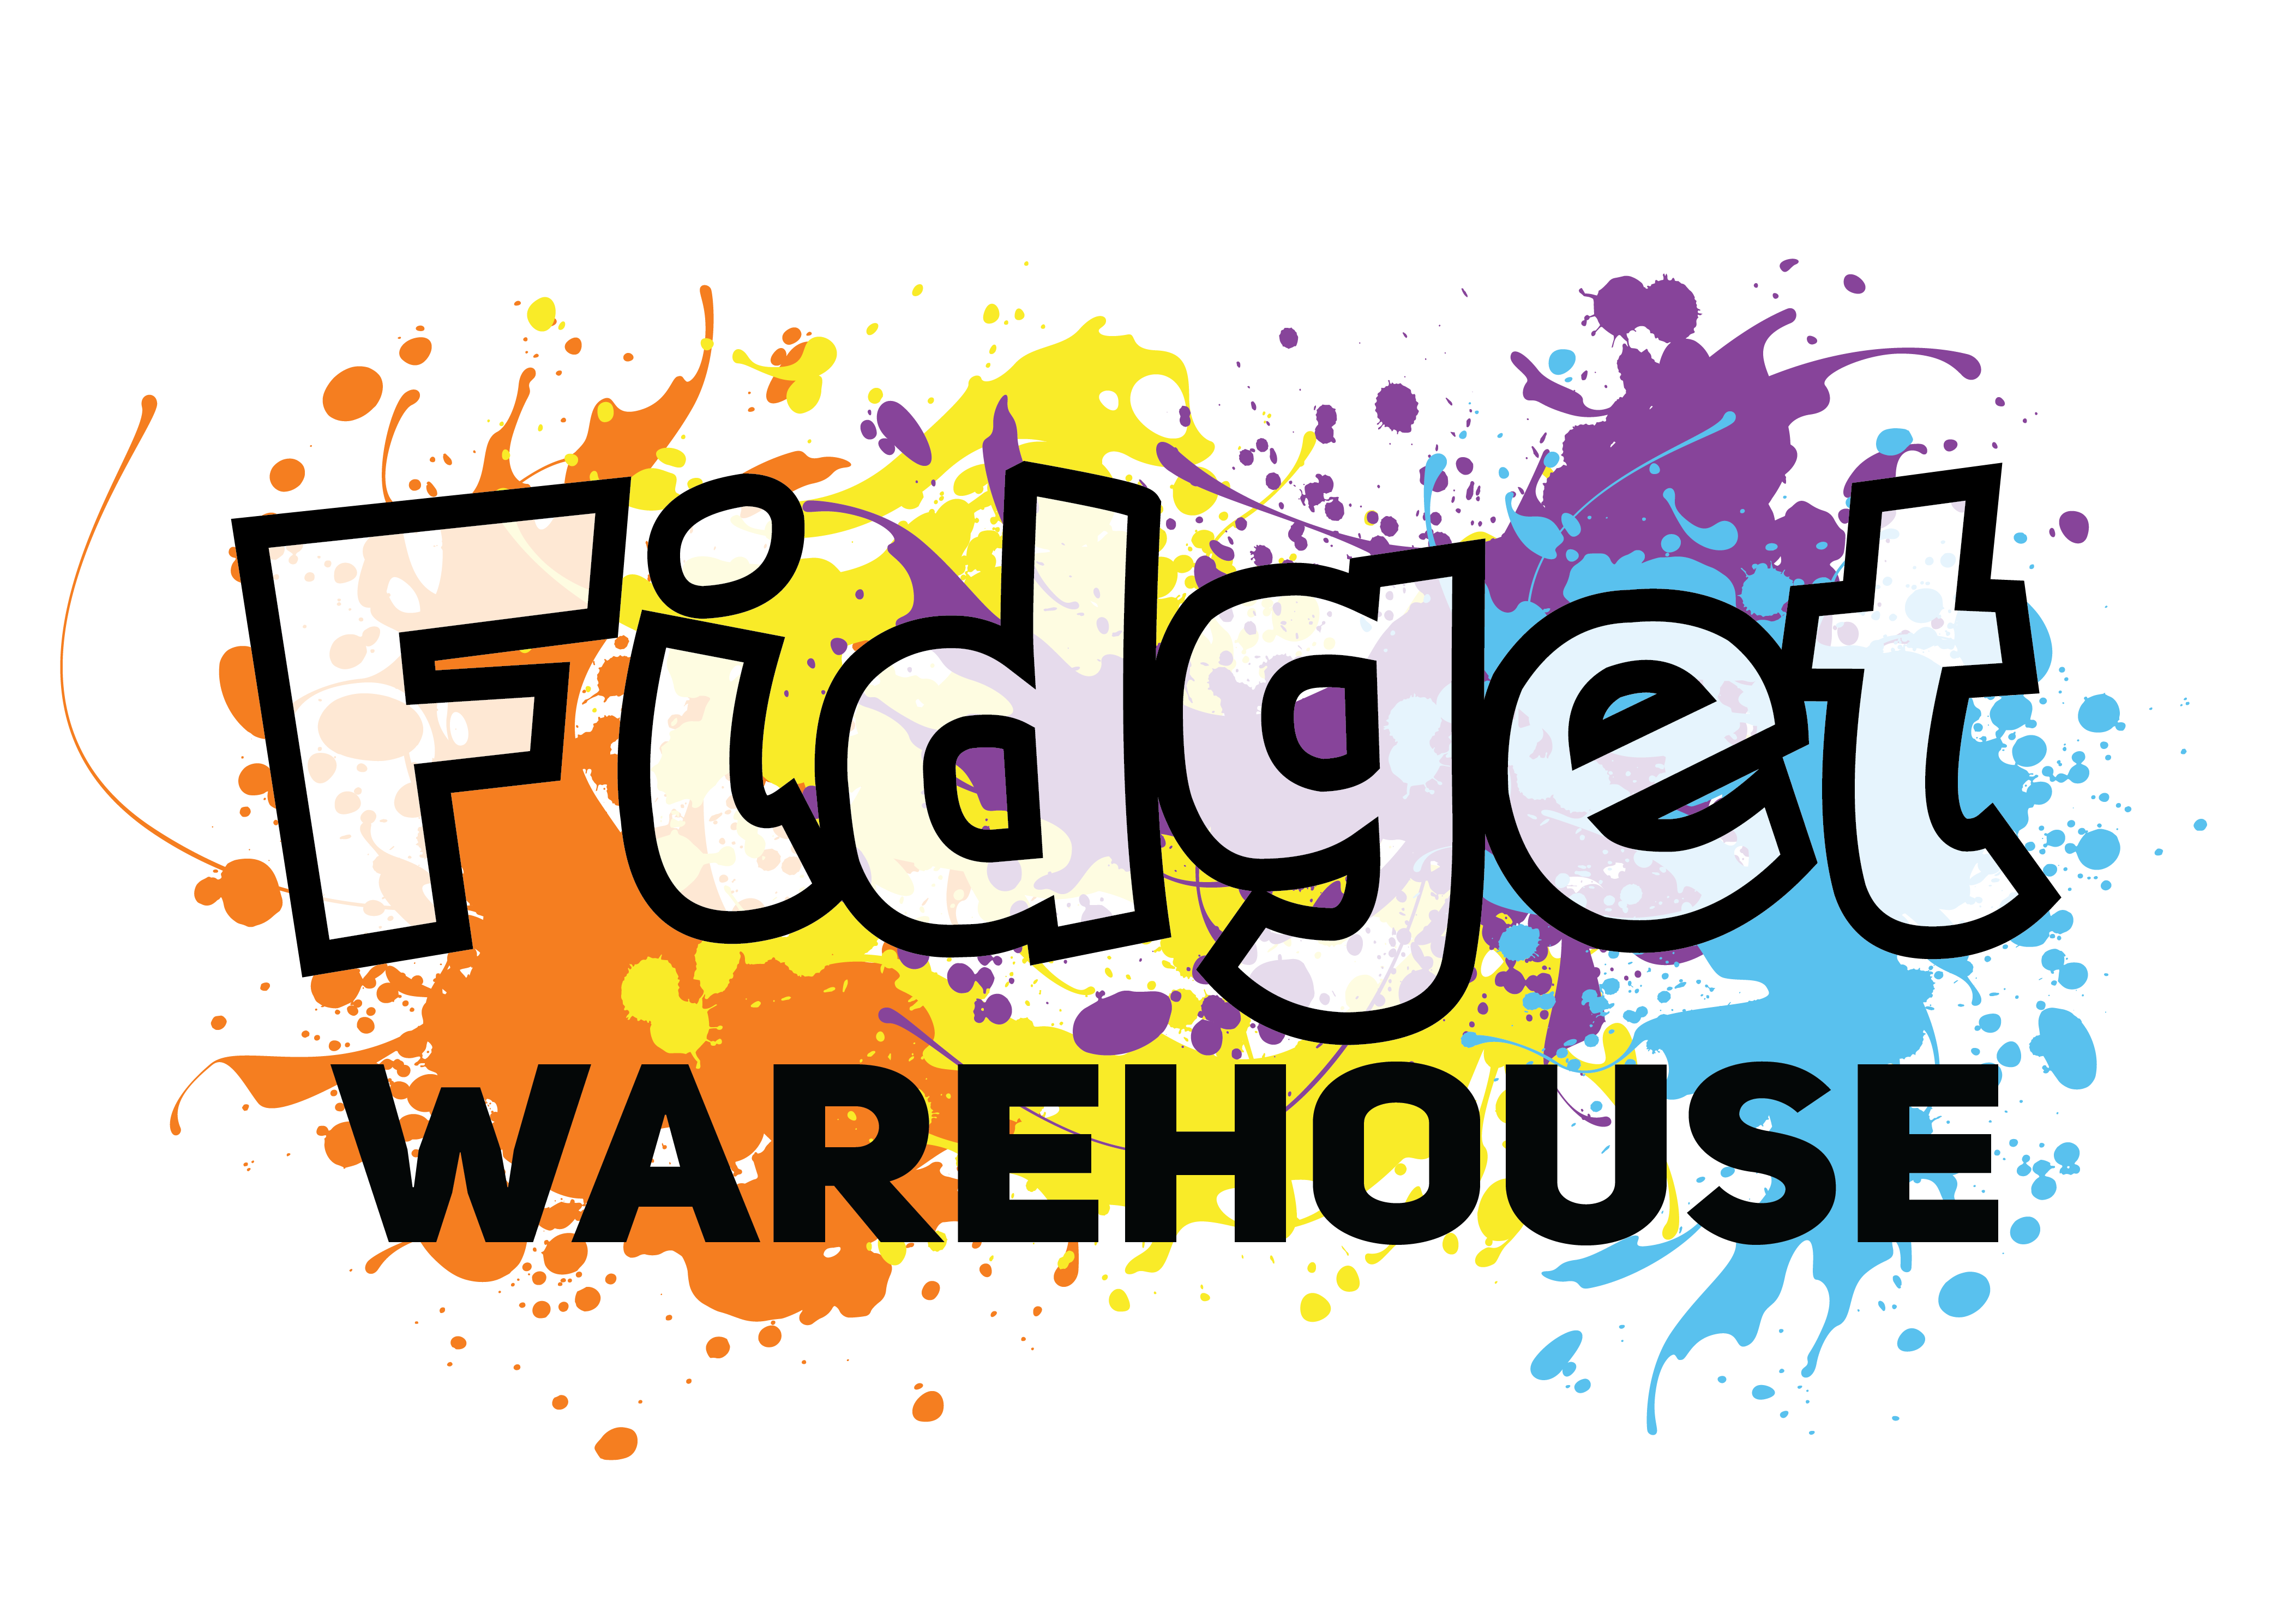 Fidget Warehouse Australia